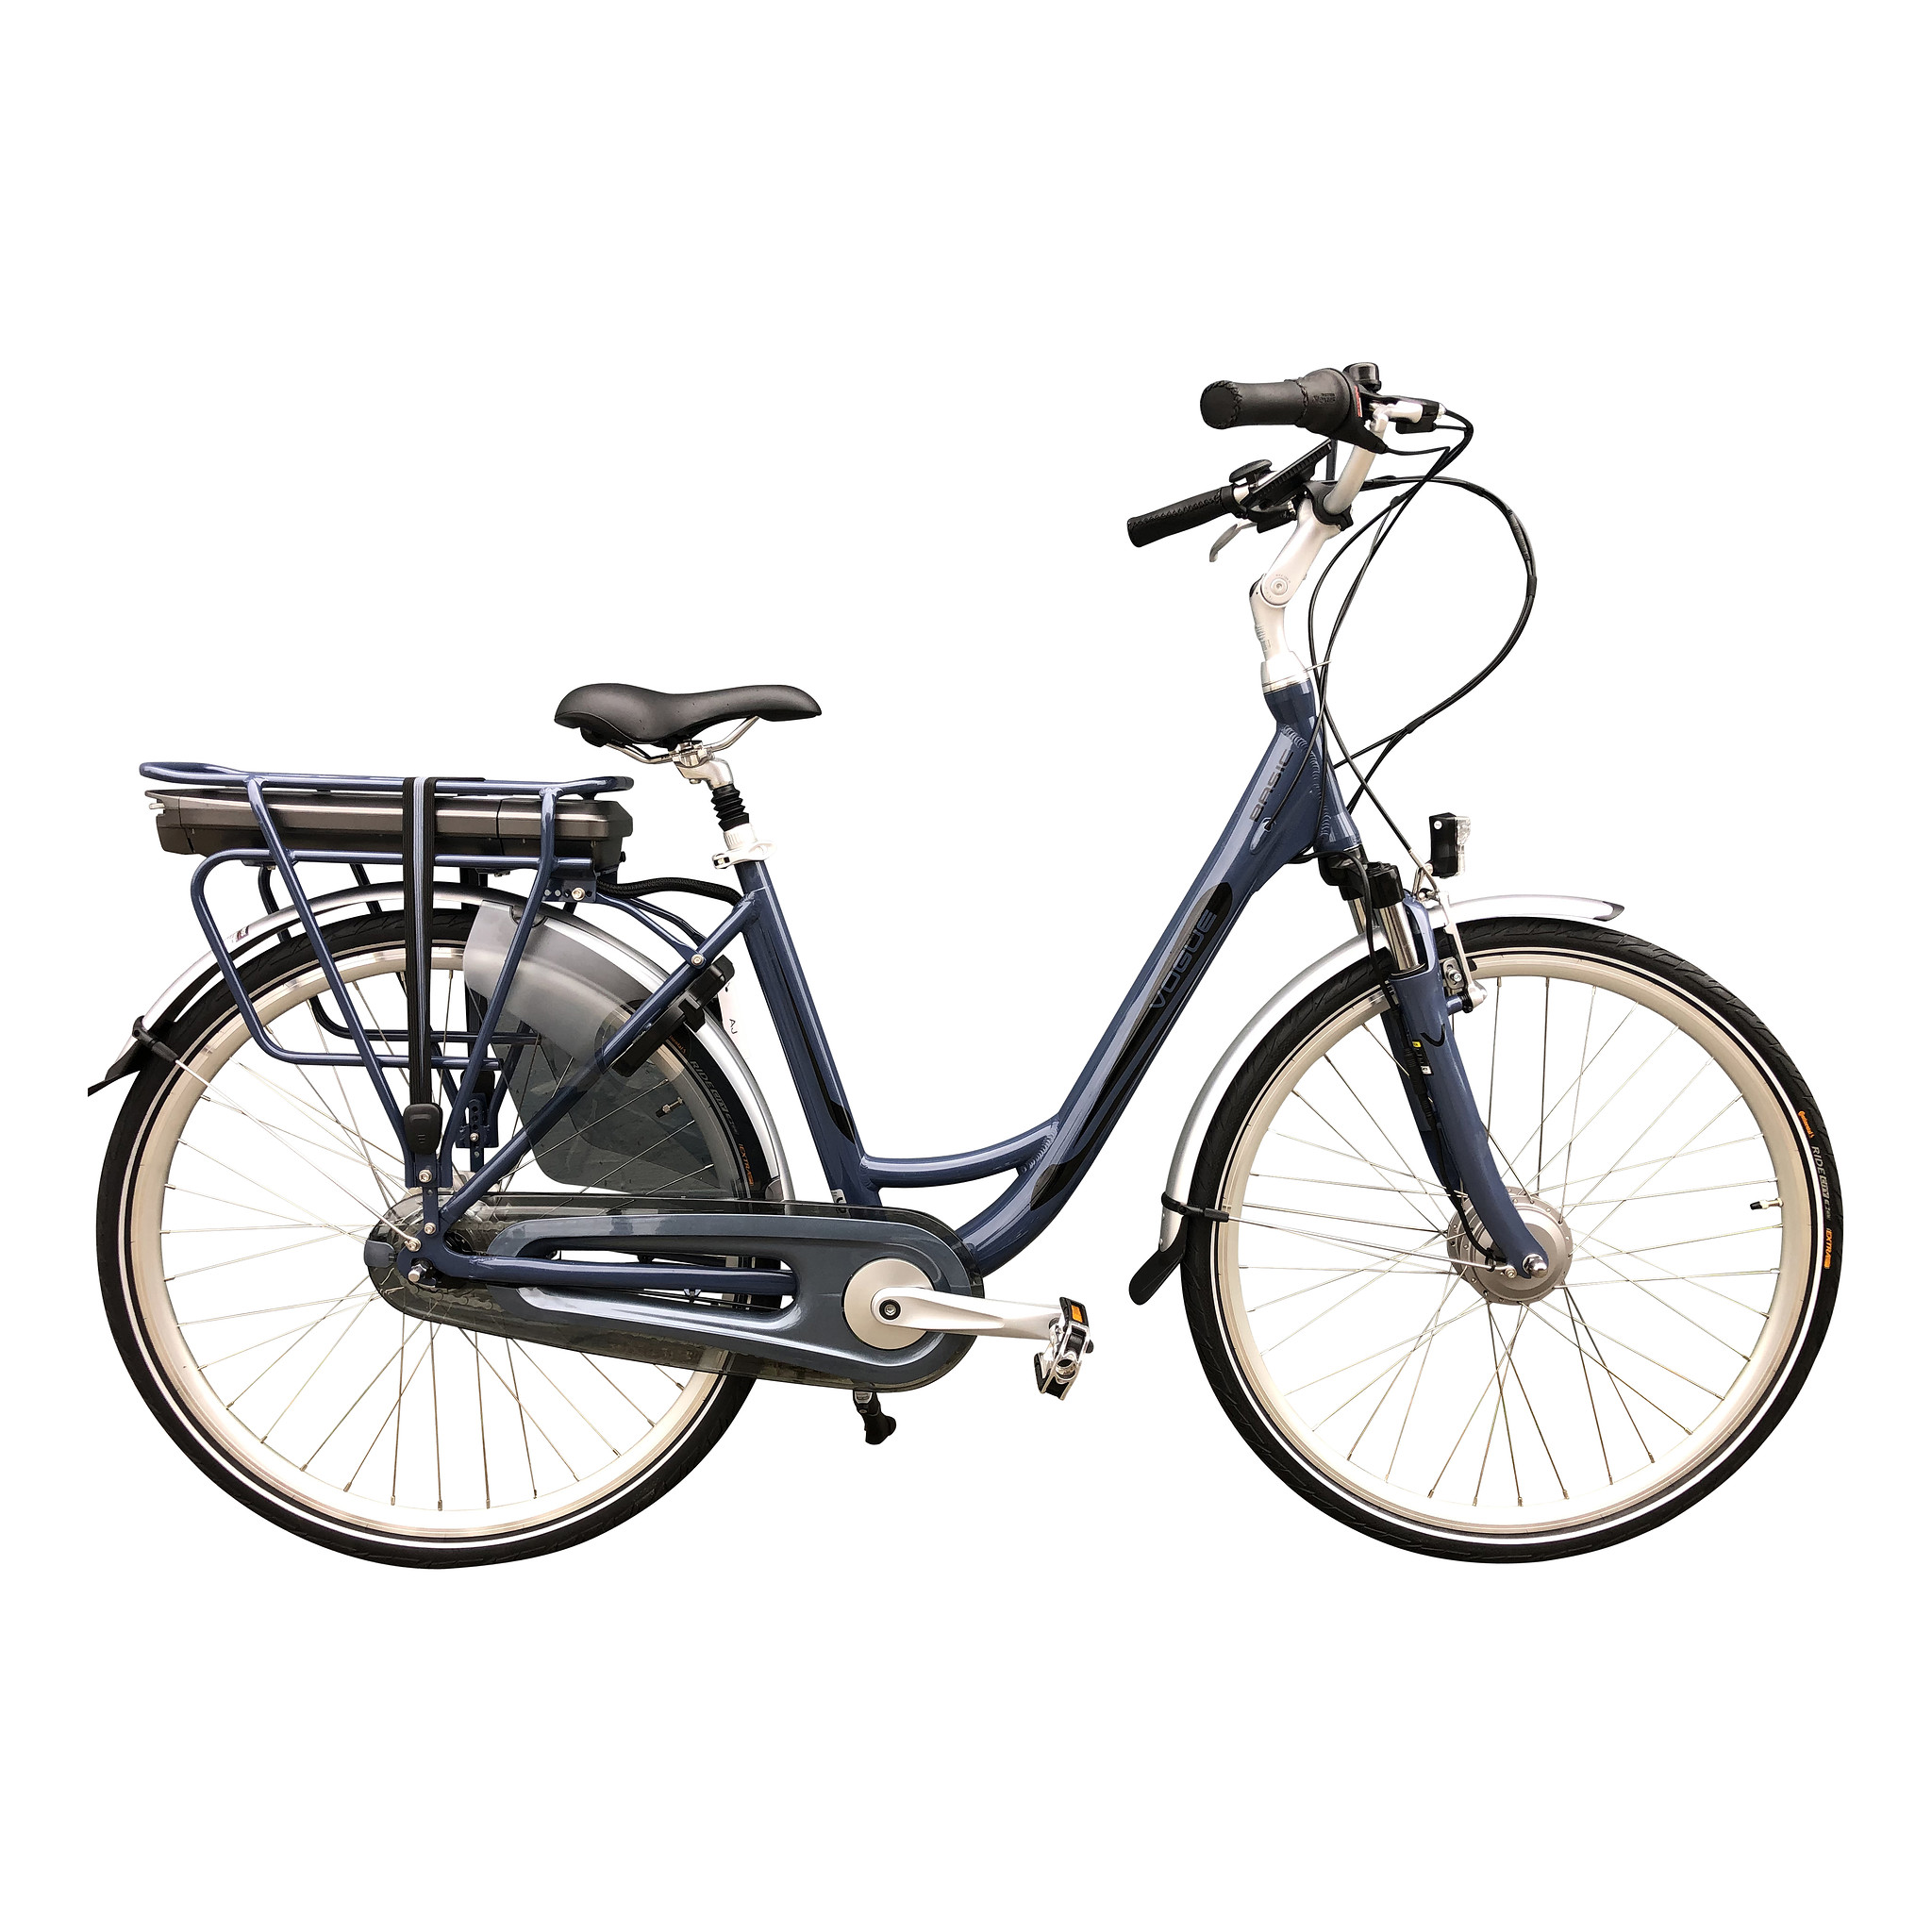 Vogue Elektrische fiets Basic N7 Dames 49 cm Blauw 468 Wh Blauw